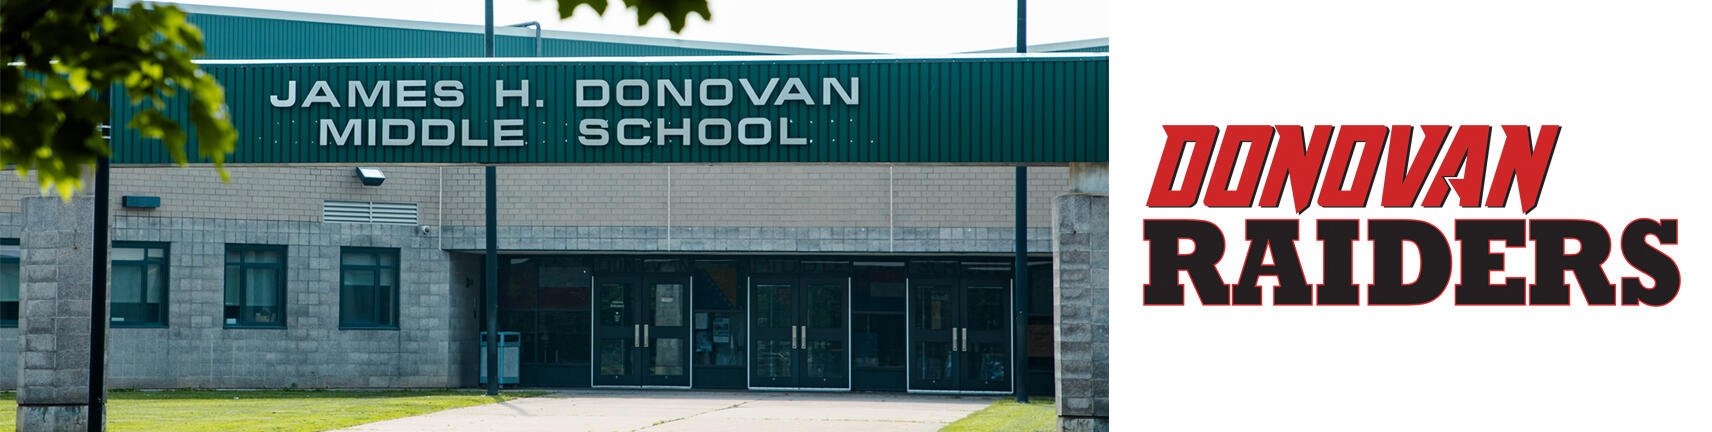 Gambar bangunan Sekolah Donovan dan Logo Donovan Raiders